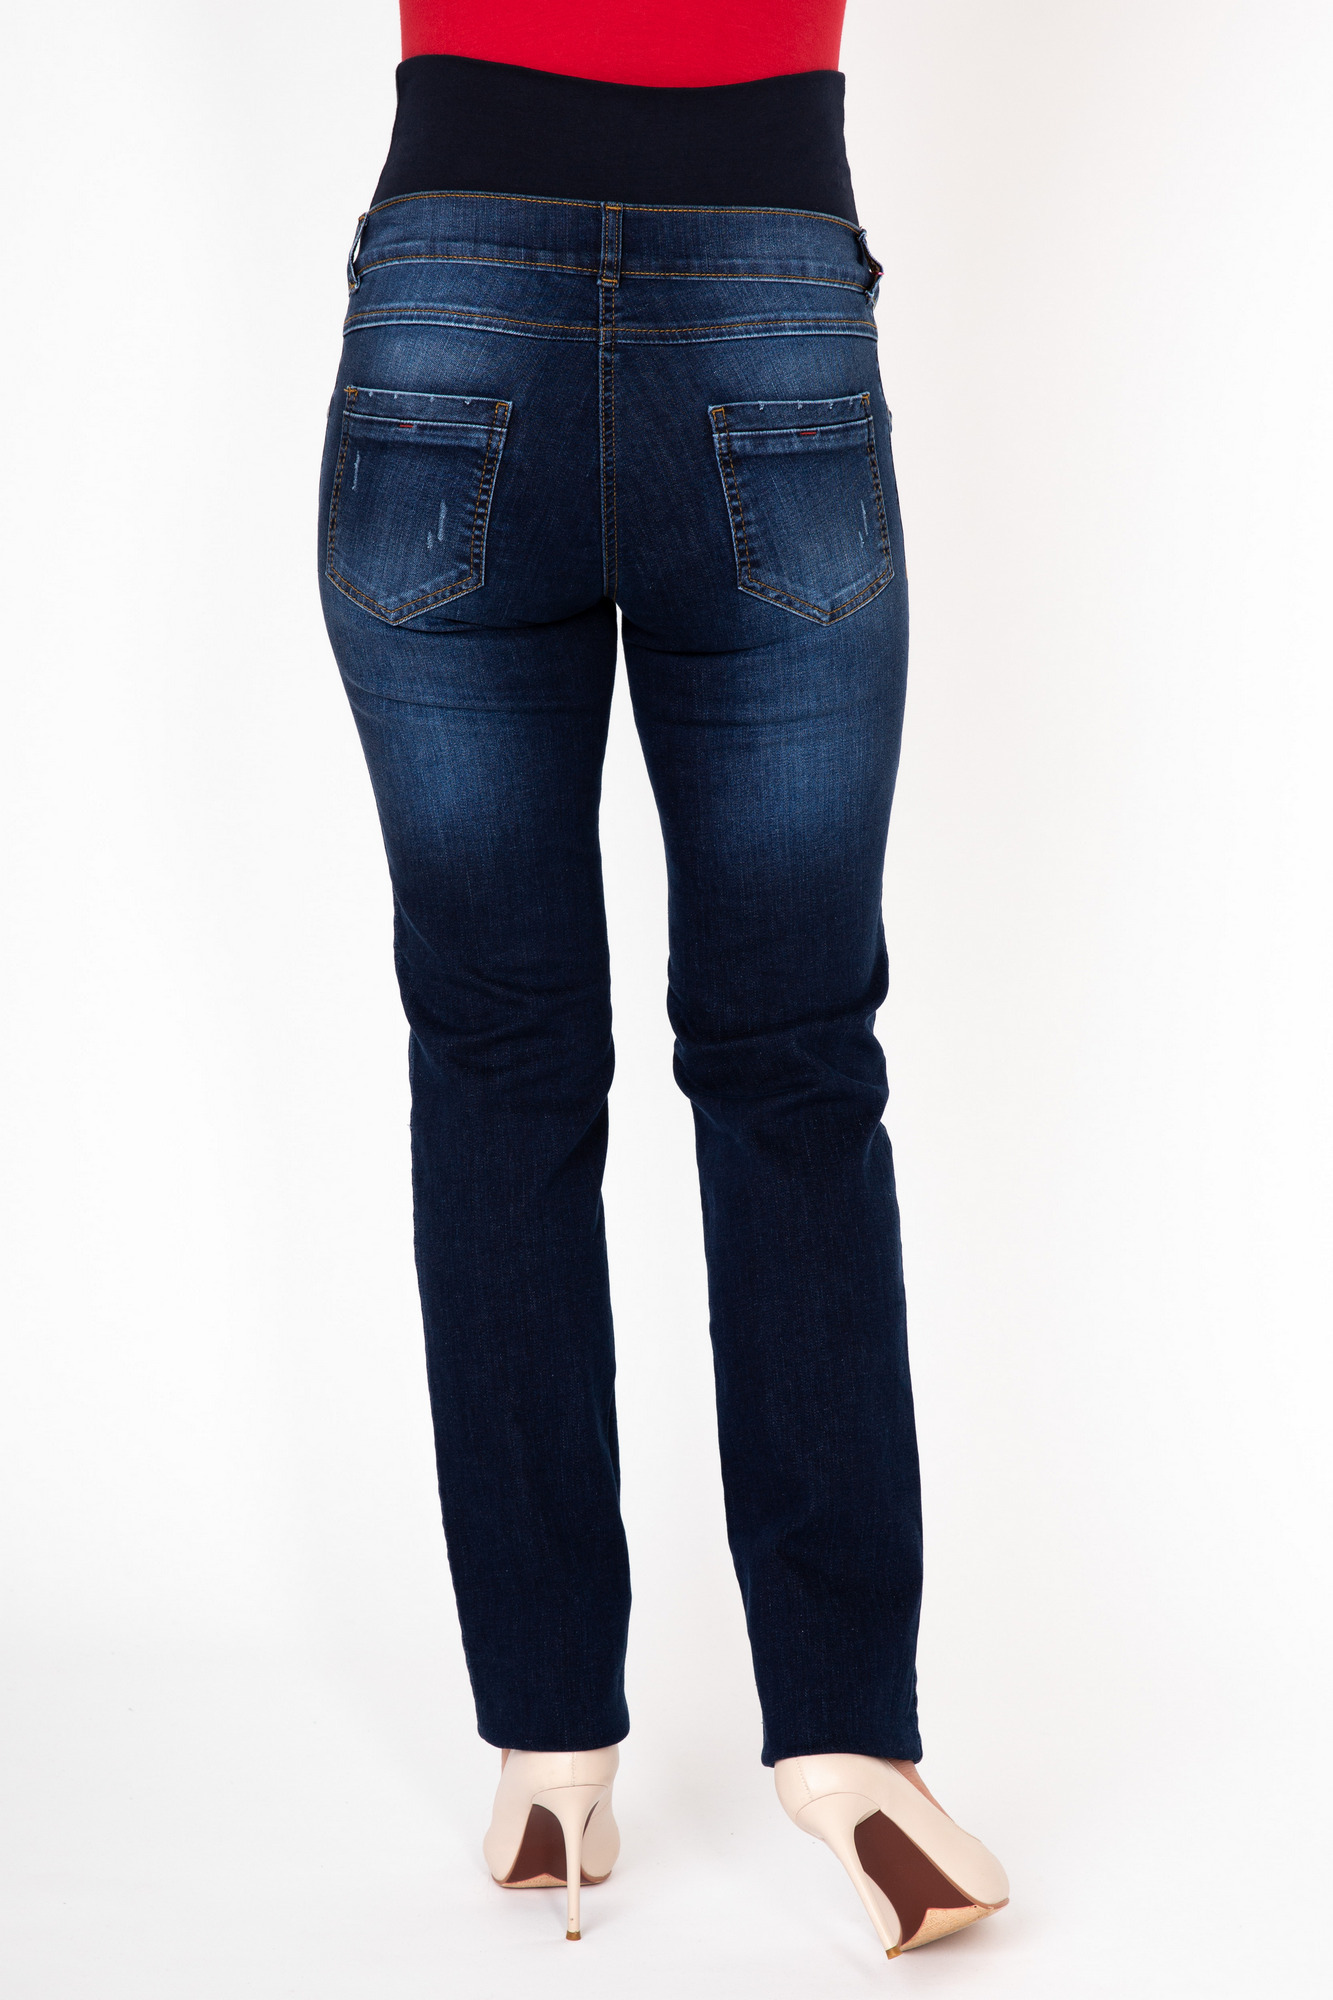 Фото джинсы для беременных MAMA`S FANTASY, зауженные, элементы потертости, средняя посадка, вставка от магазина СкороМама, синий, размеры.